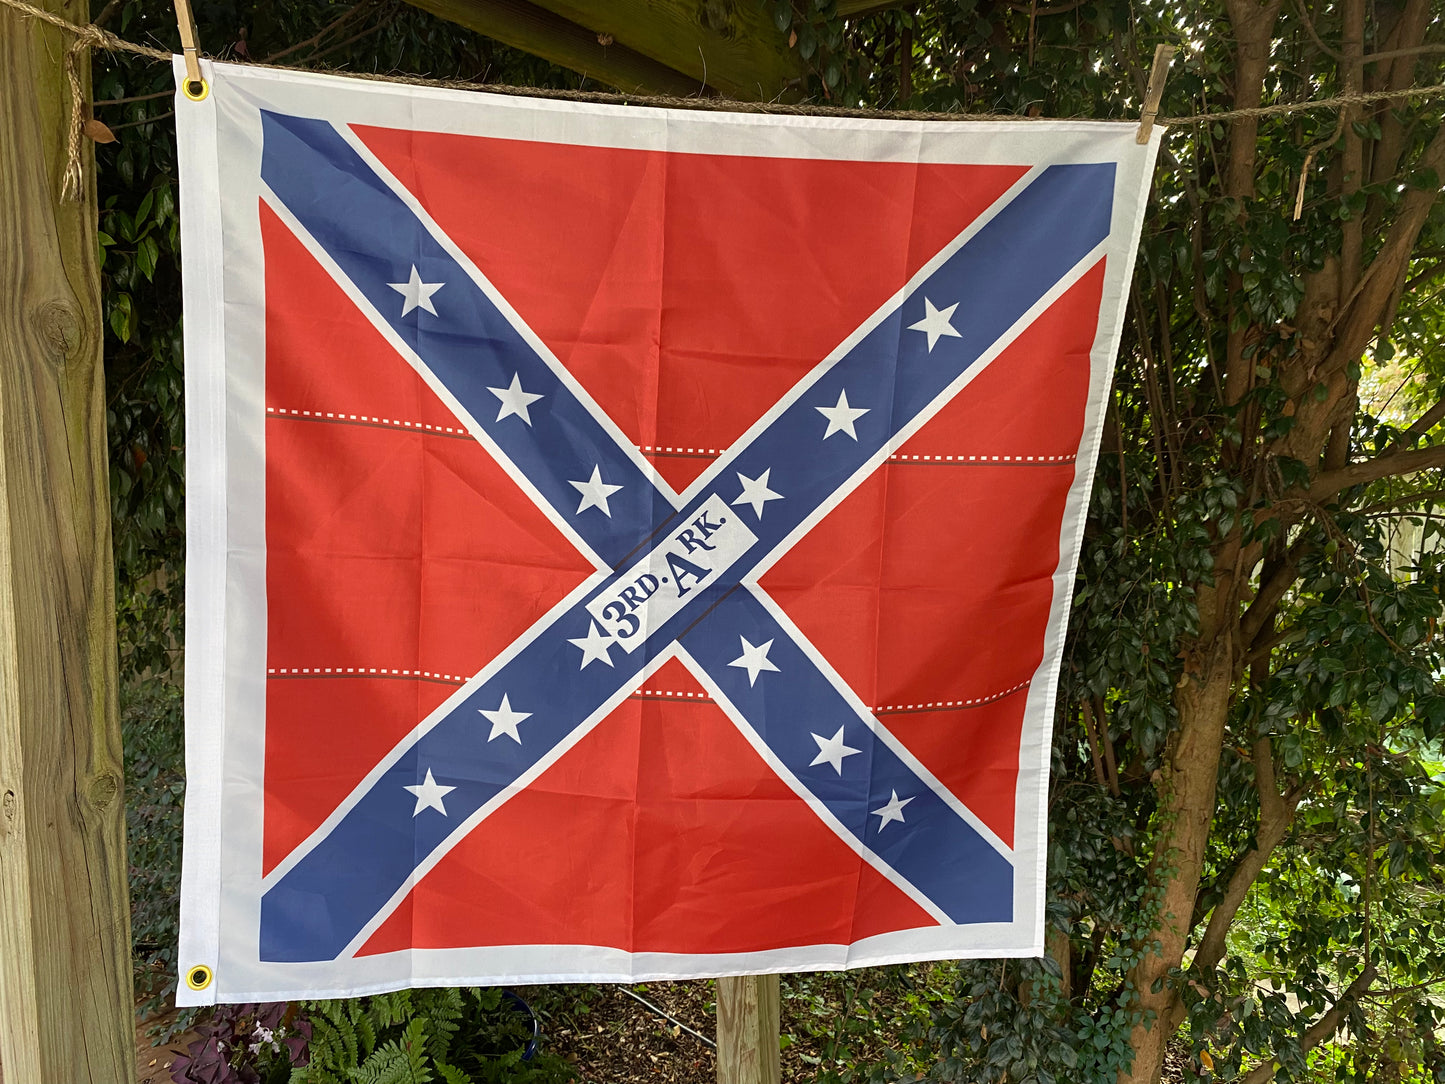 3rd Arkansas Infantry House Flag